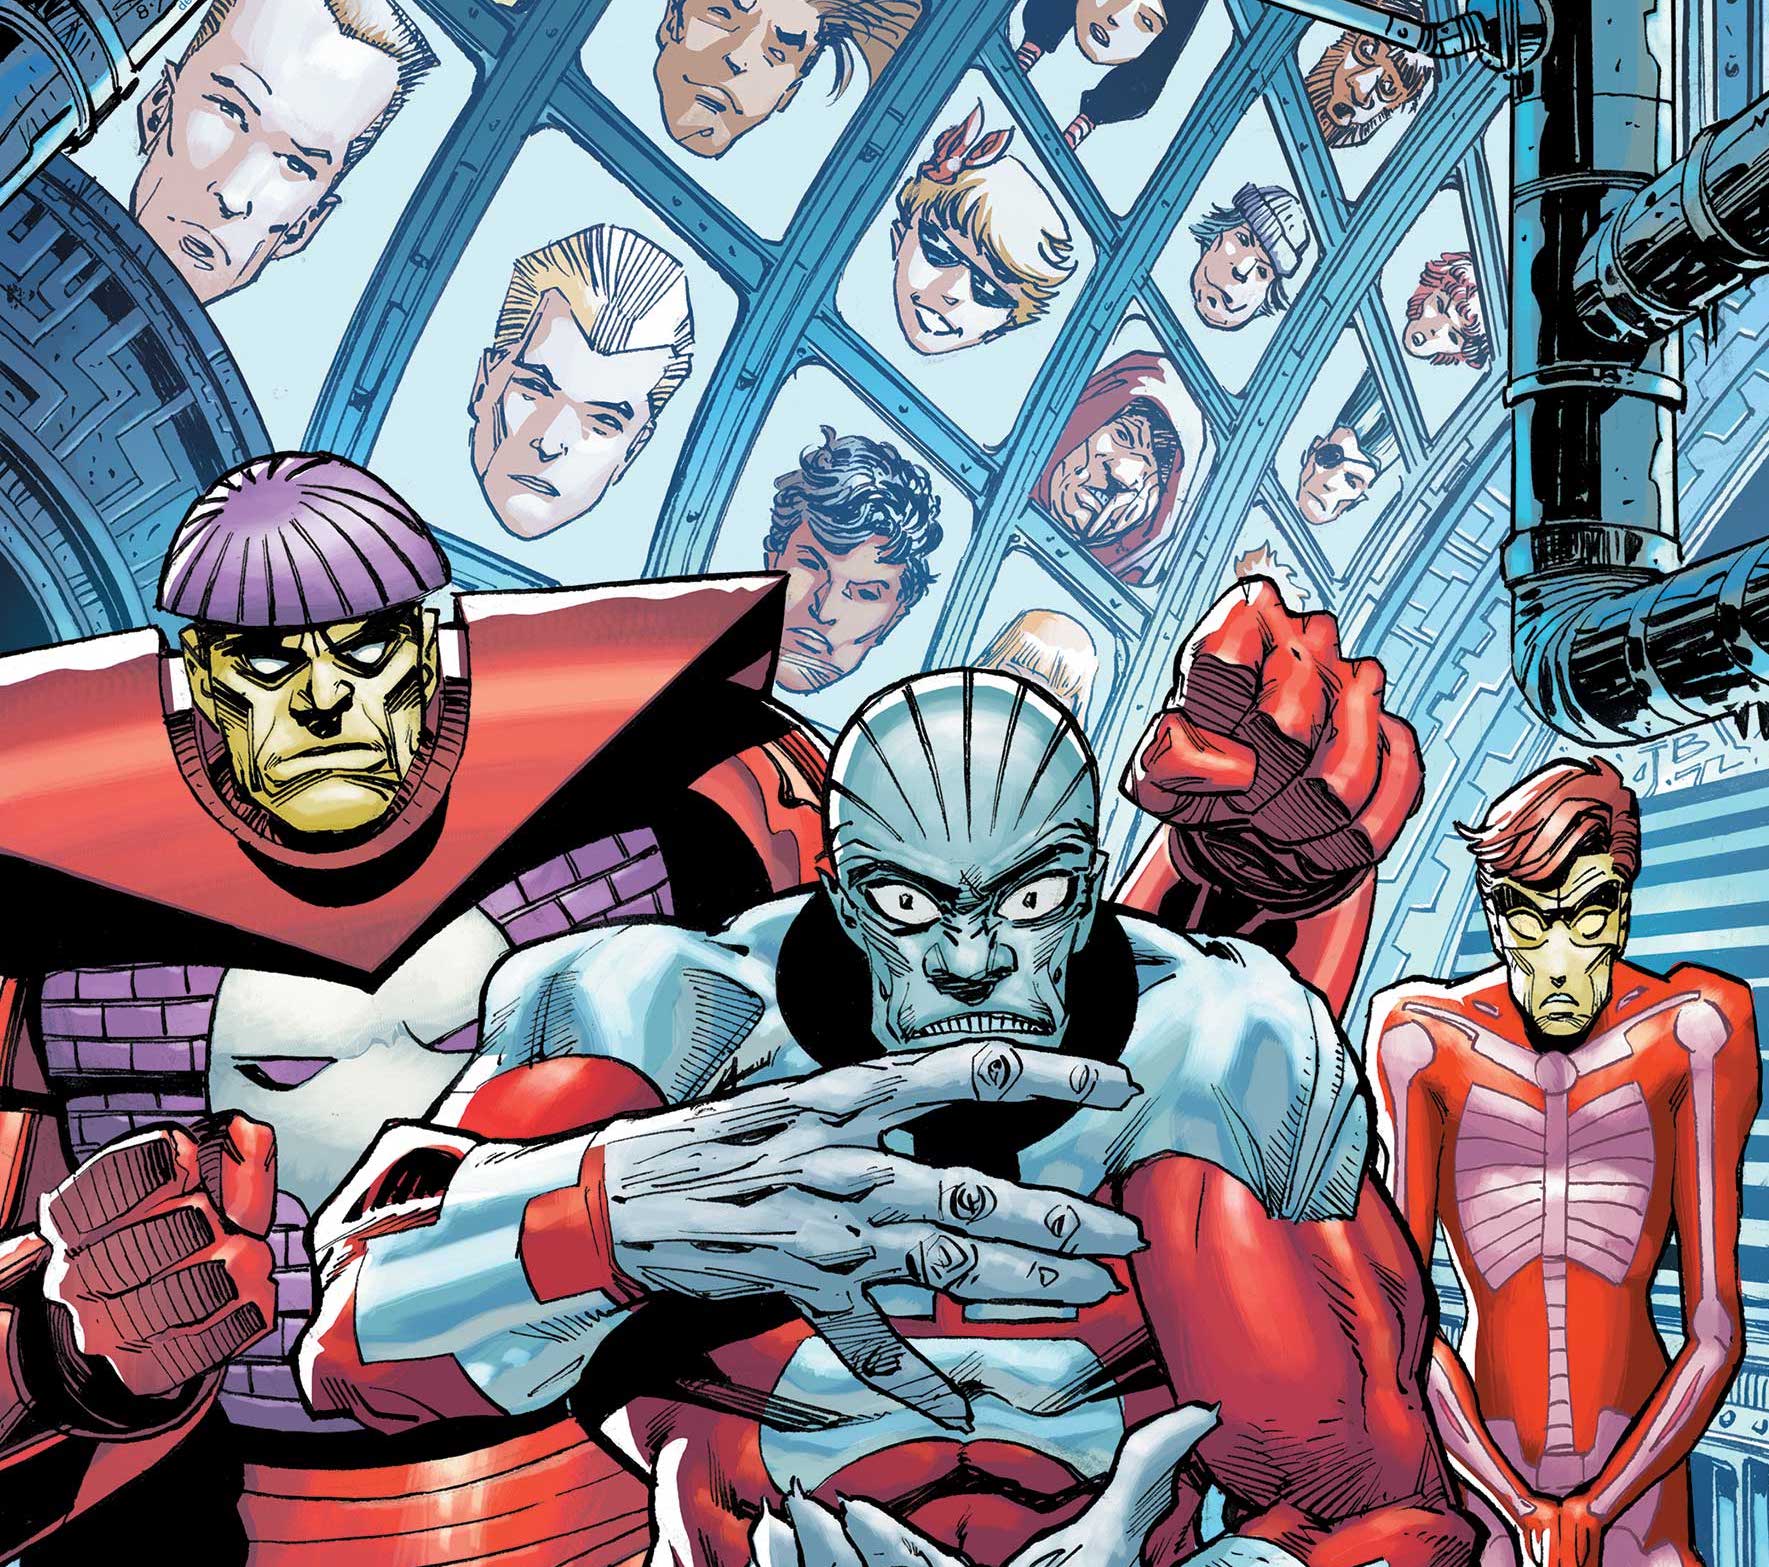 Louise and Walter Simonson return for 'X-Men Legends' #11